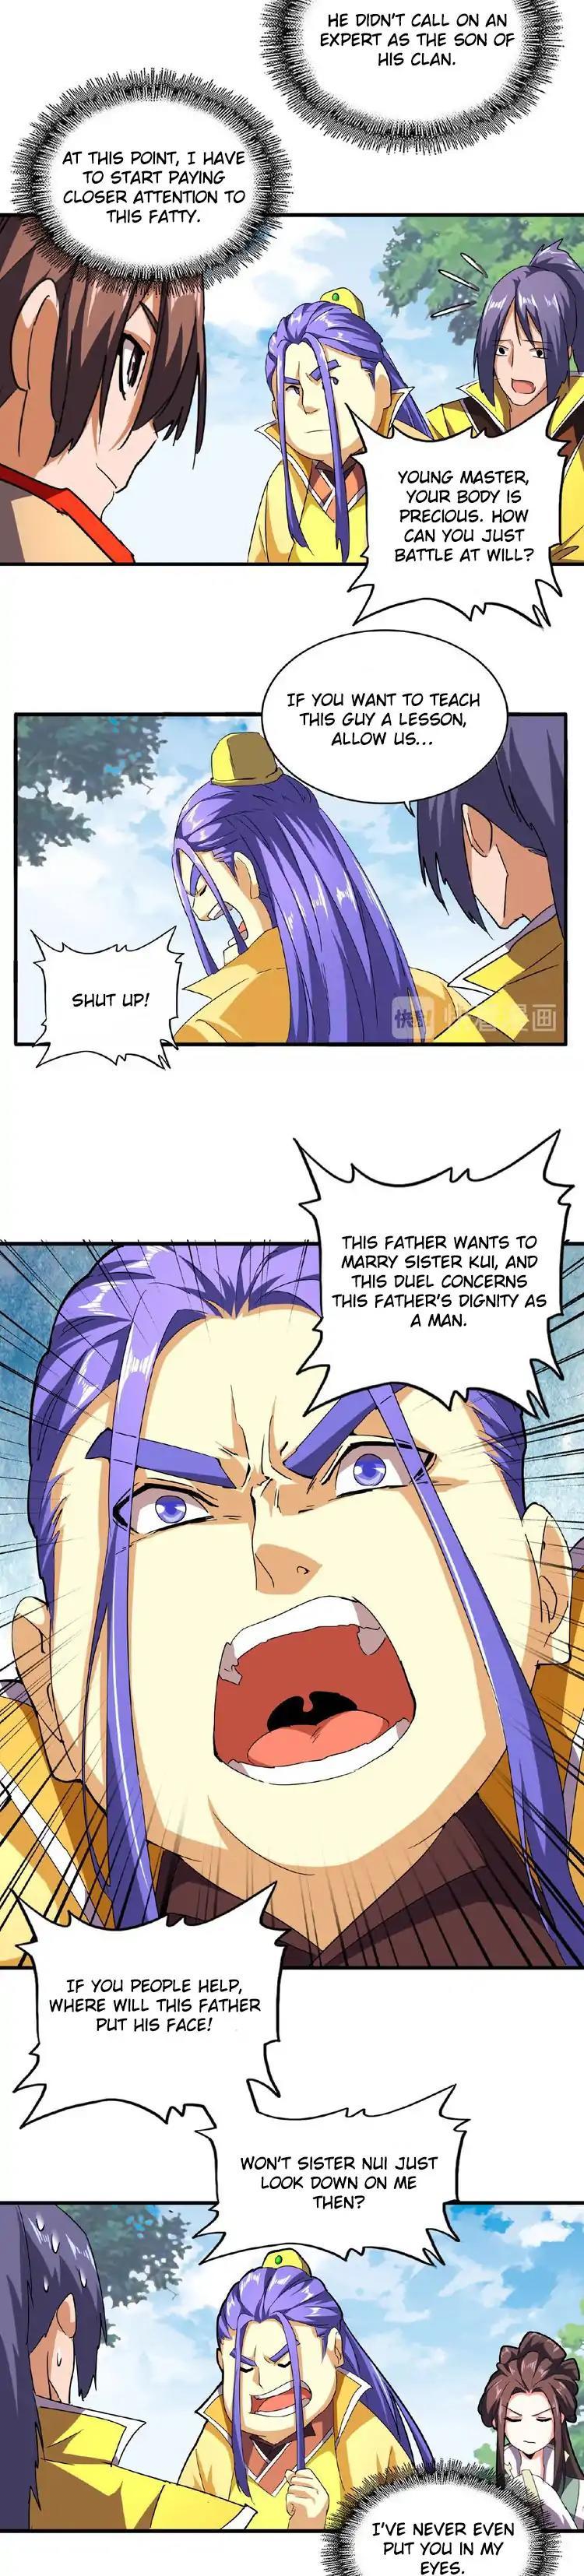 Magic Emperor Chapter 36 page 4 - Mangakakalot